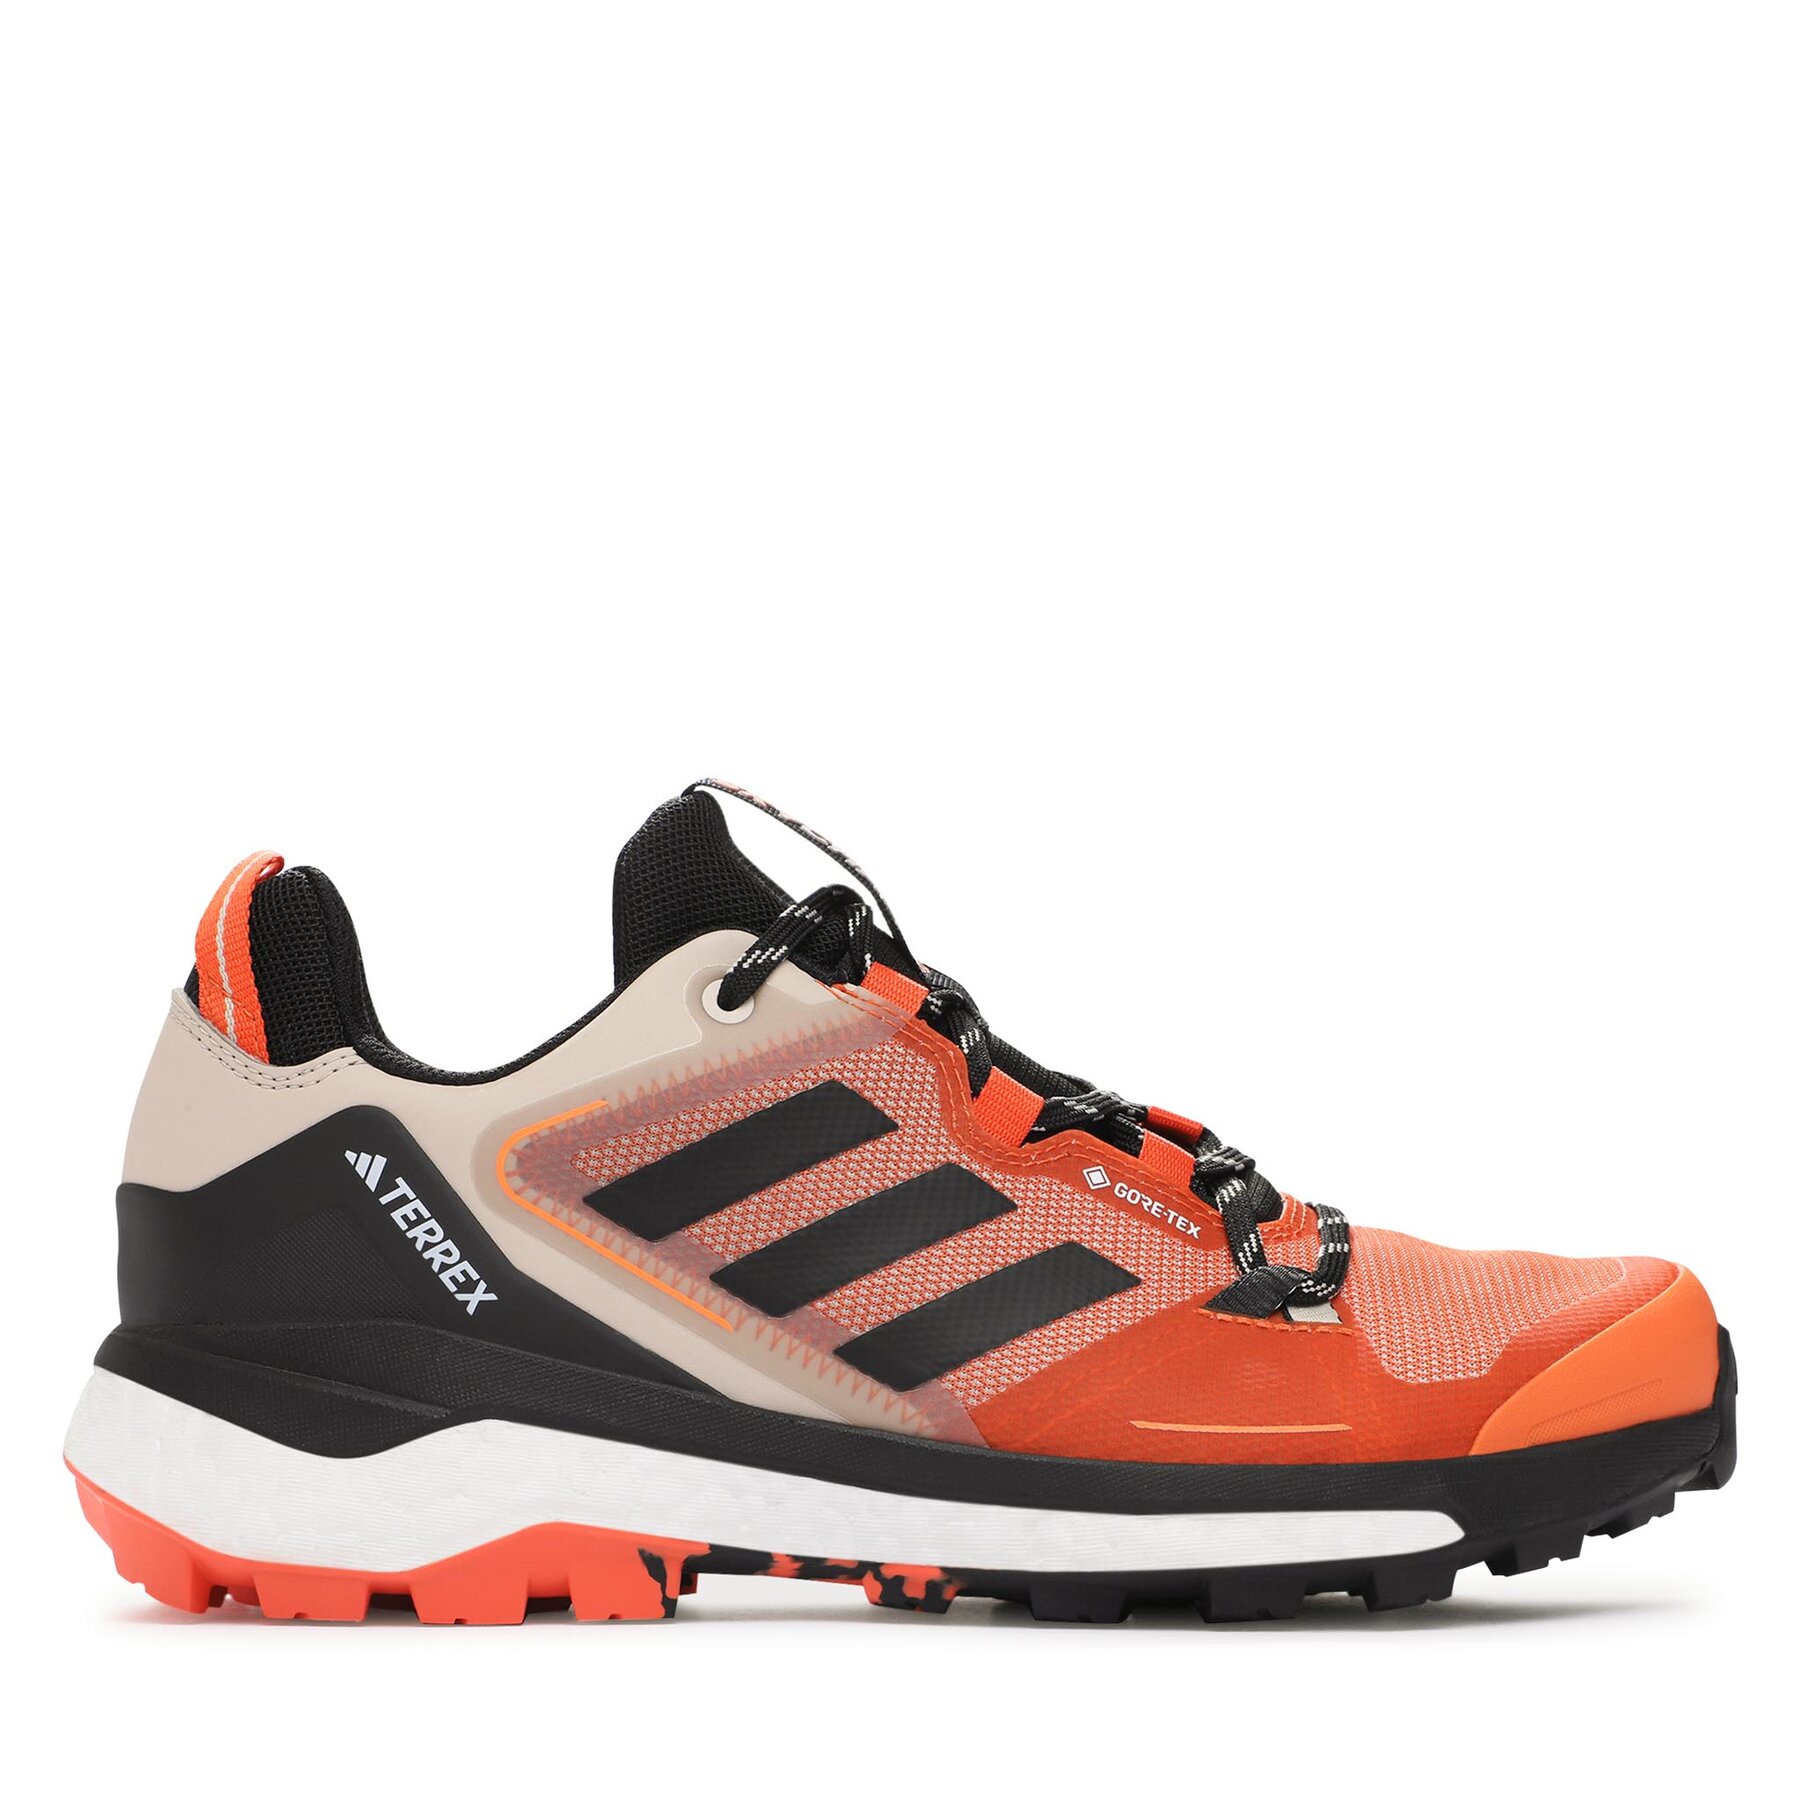 Trekkingschuhe adidas Terrex Skychaser GORE-TEX Hiking Shoes 2.0 IE6892 Orange von Adidas